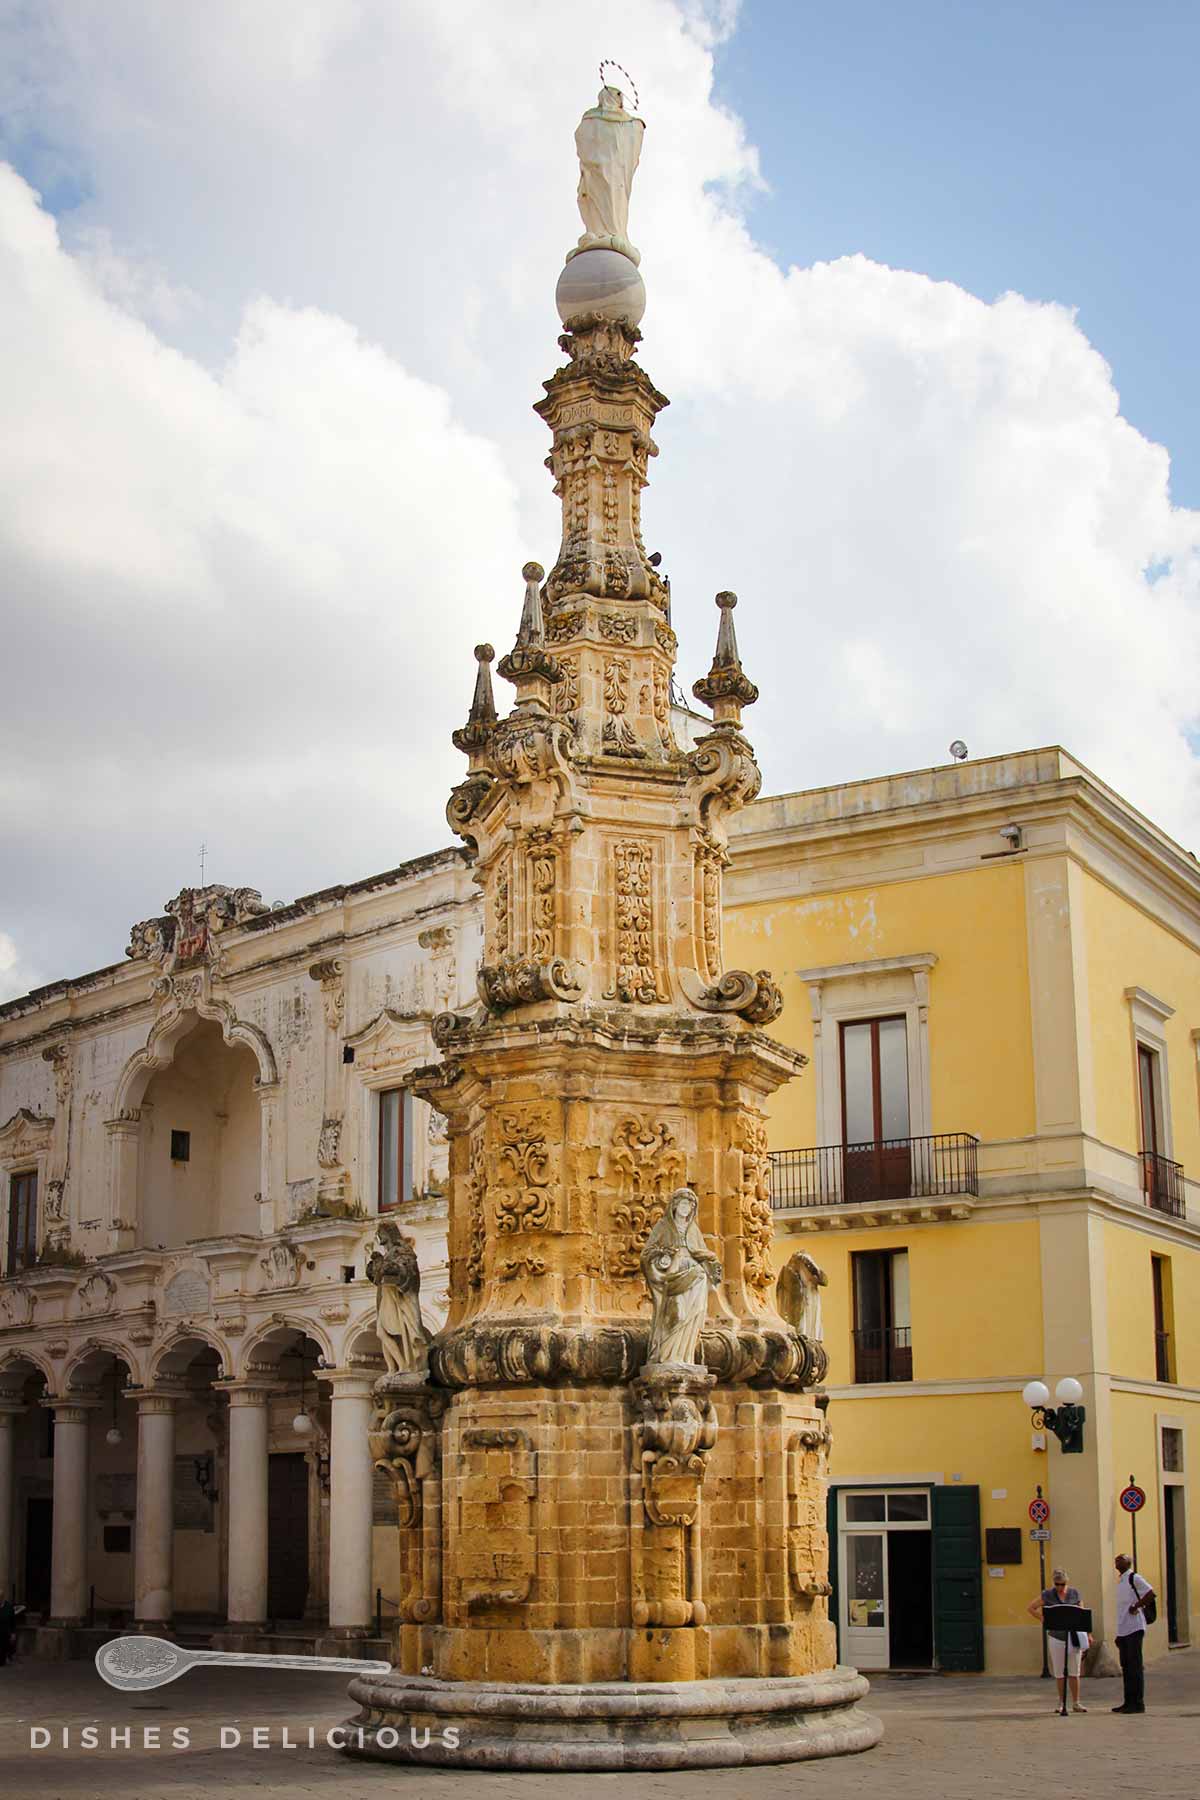 Üppig barockverzierte Immacolata-Statue auf der zentralen Piazza von Nardò.